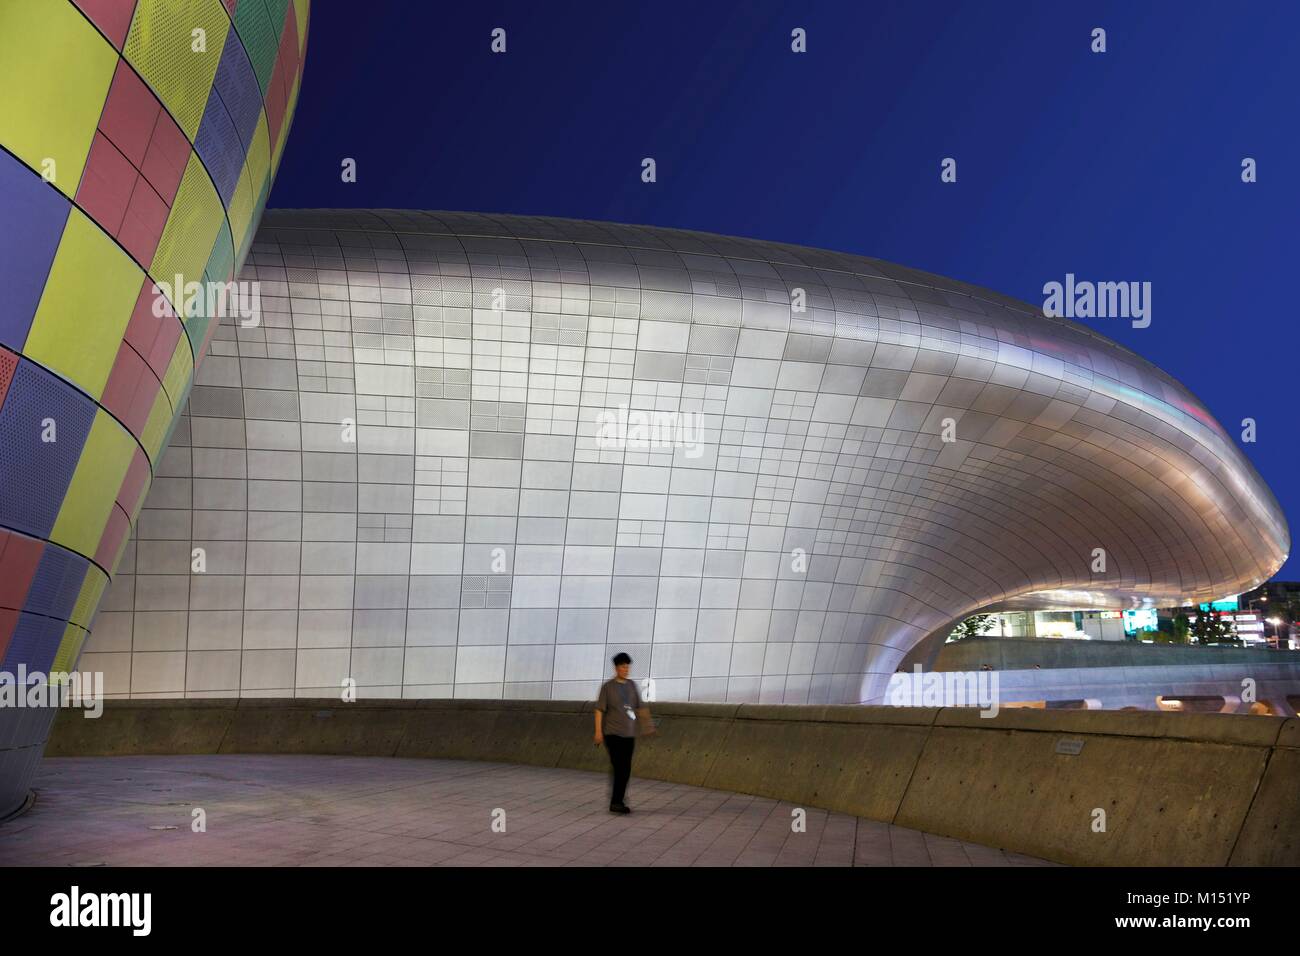 Corea del Sud, Seoul, Fabien Yoon, uomo di fronte alla progettazione di Dongdaemun Plaza, edificio futuristico dell'architetto Zaha Hadid Foto Stock